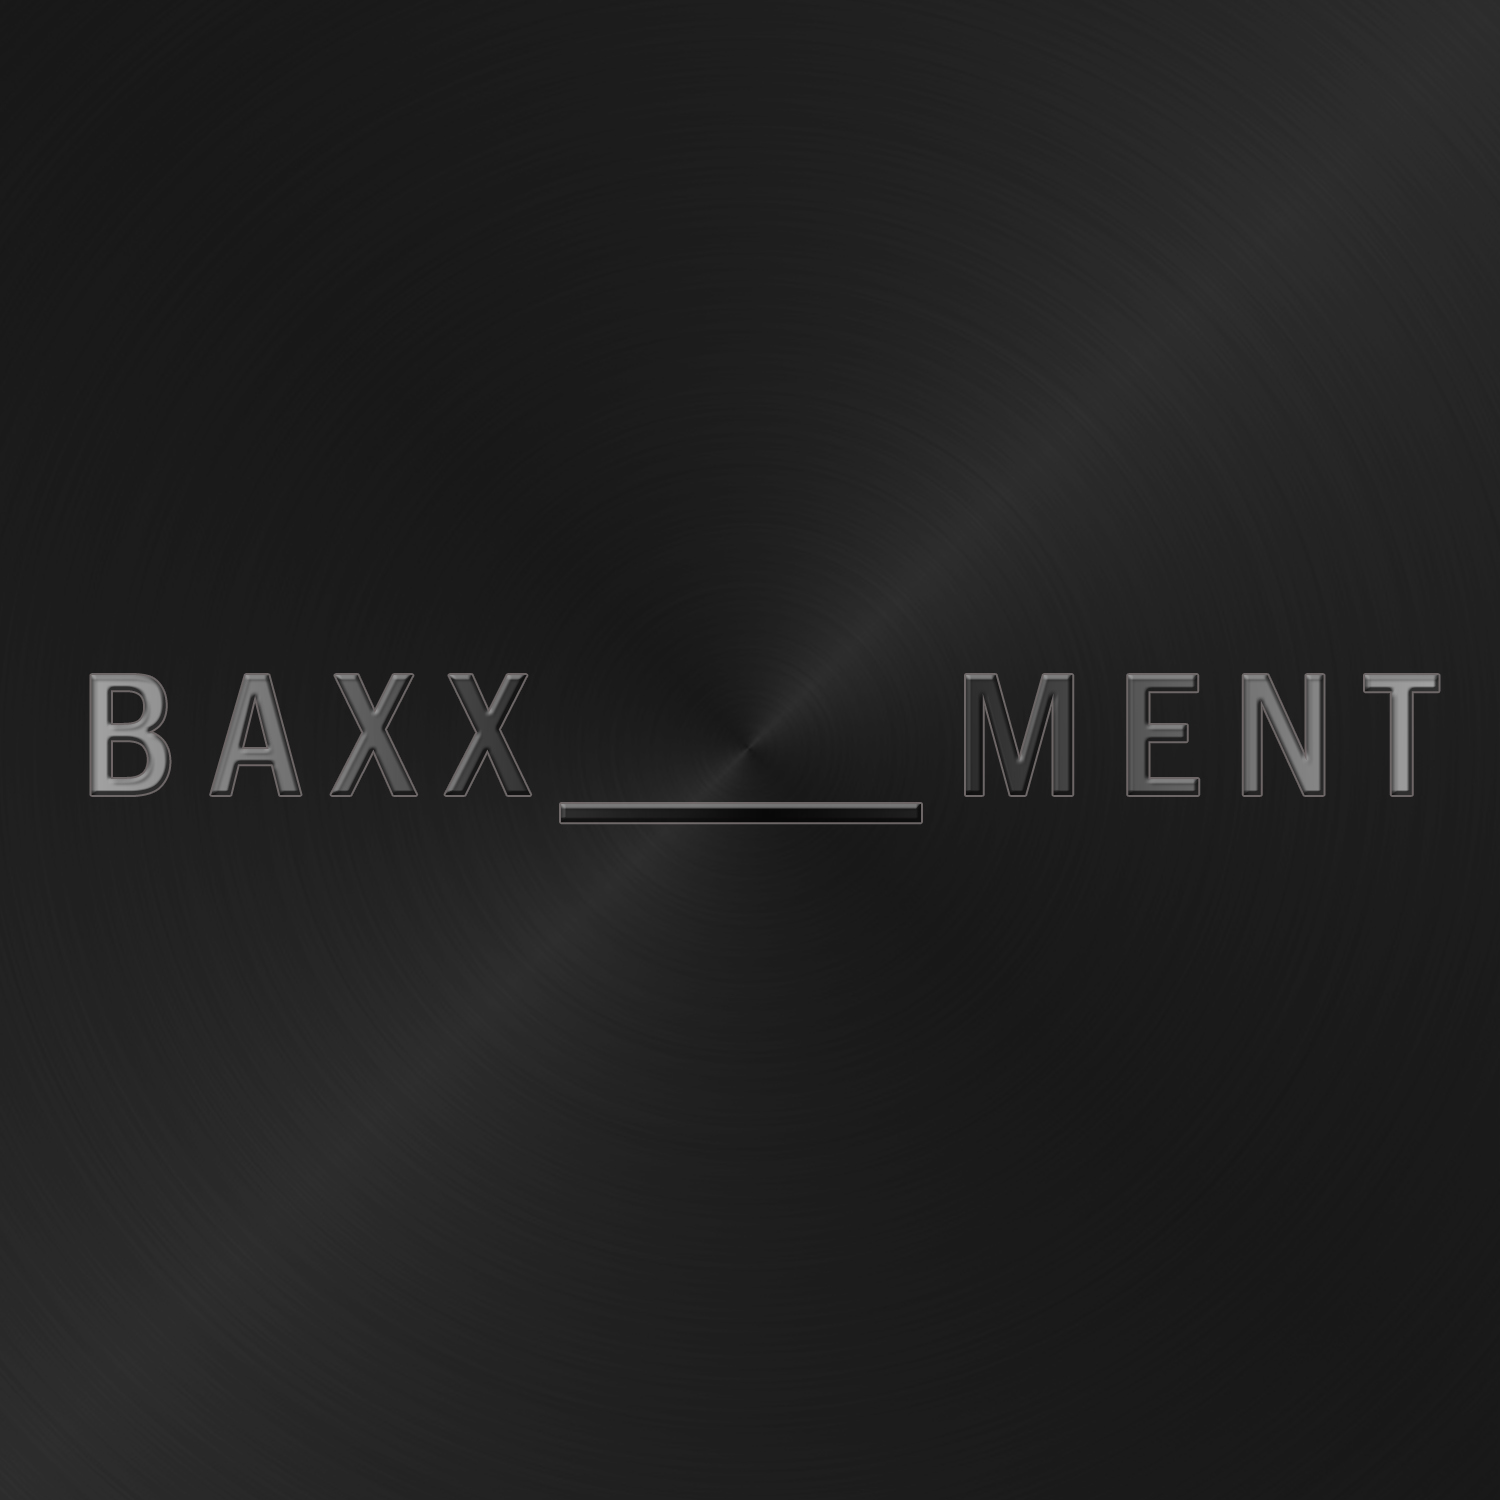 [ 신보 ] BAXXMENT Artwork.jpg